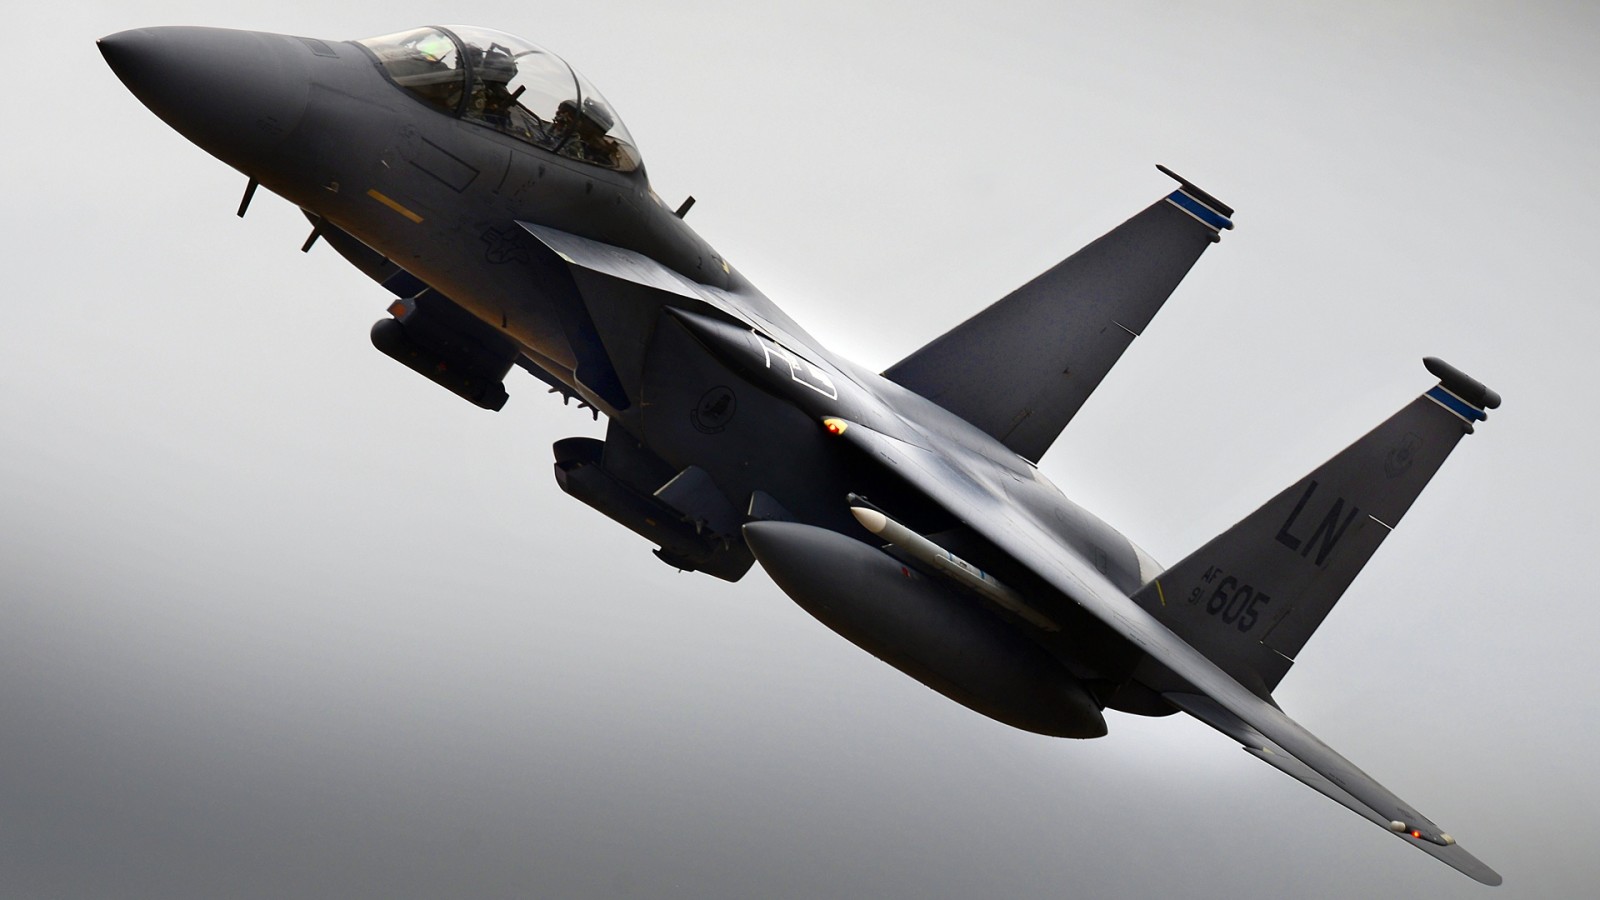 กองทัพอากาศสหรัฐฯ, เครื่องบินขับไล่ทิ้งระเบิด, F-15E, Strike Eagle, อเมริกันดับเบิล